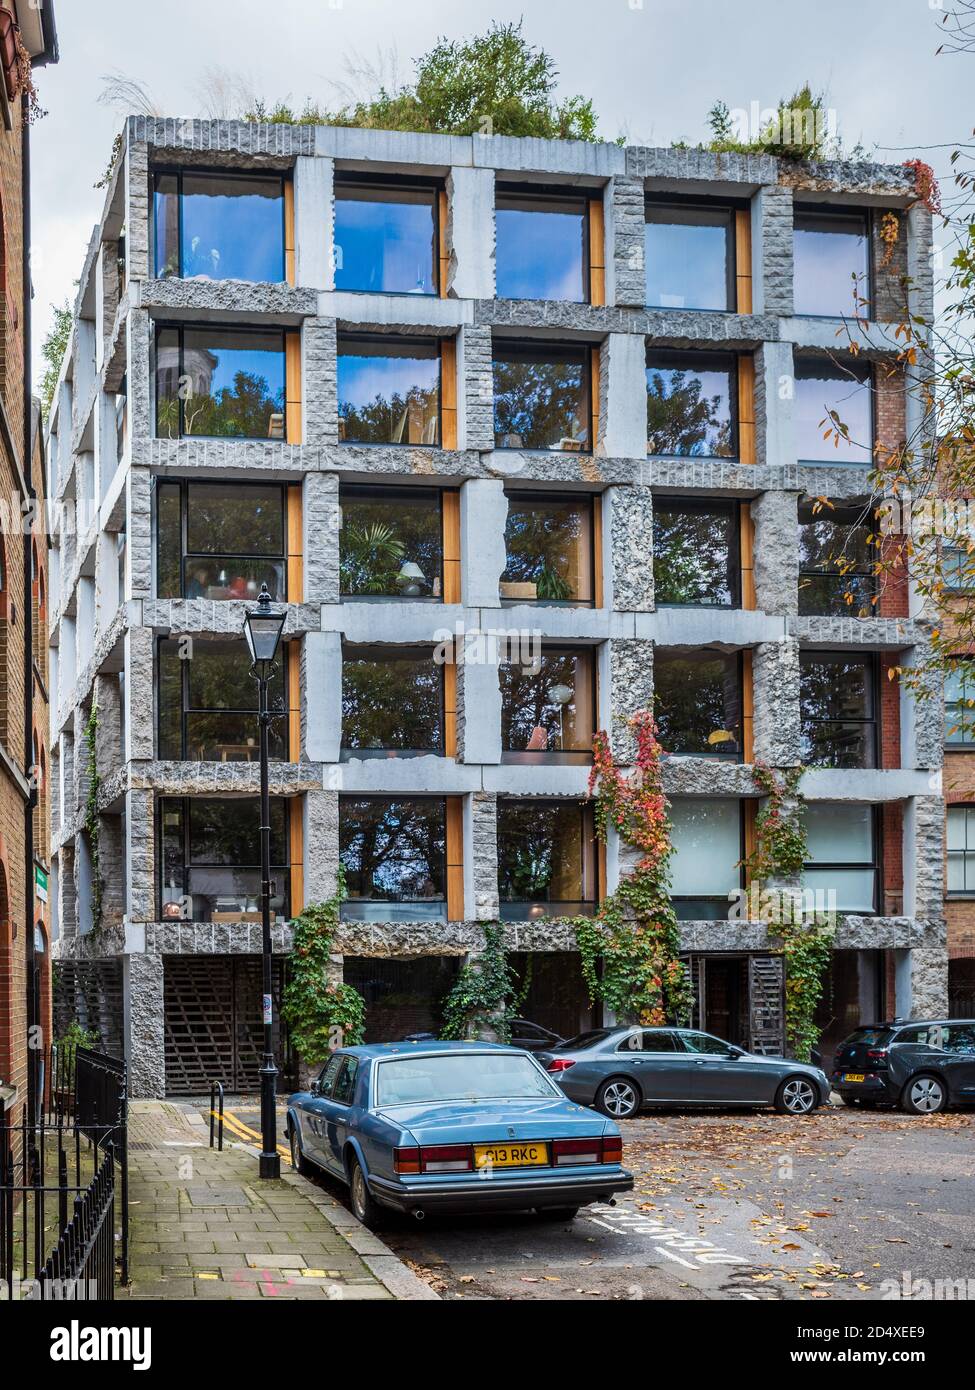 15 Clerkenwell Close London - umstrittenes, gemischtes sechsstöckiges Gebäude mit Steinfassade. Architekt: Amin Taha 2017. RIBA National Awards 2017. Stockfoto